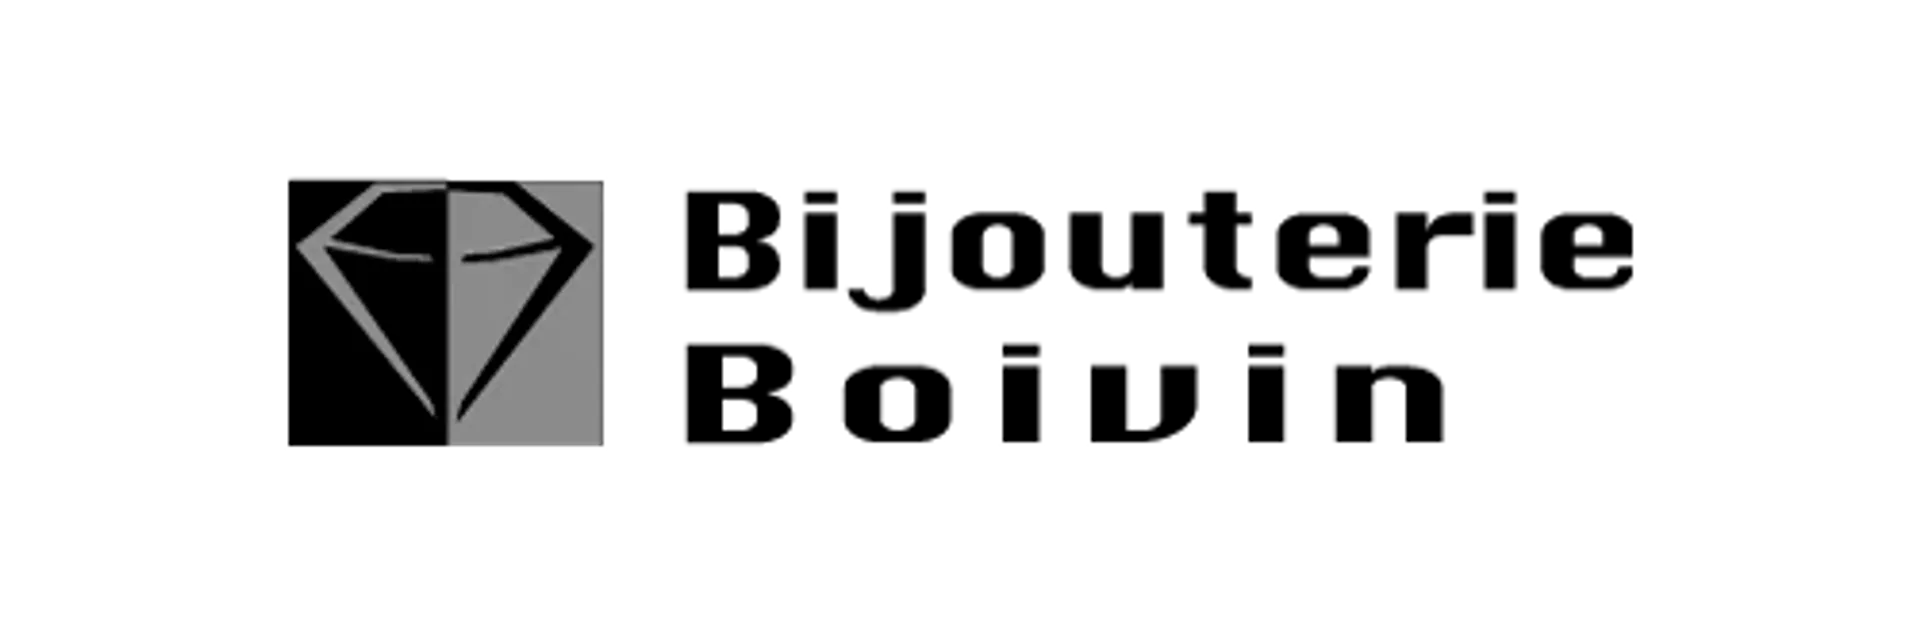 BIJOUTERIE BOIVIN logo de circulaire